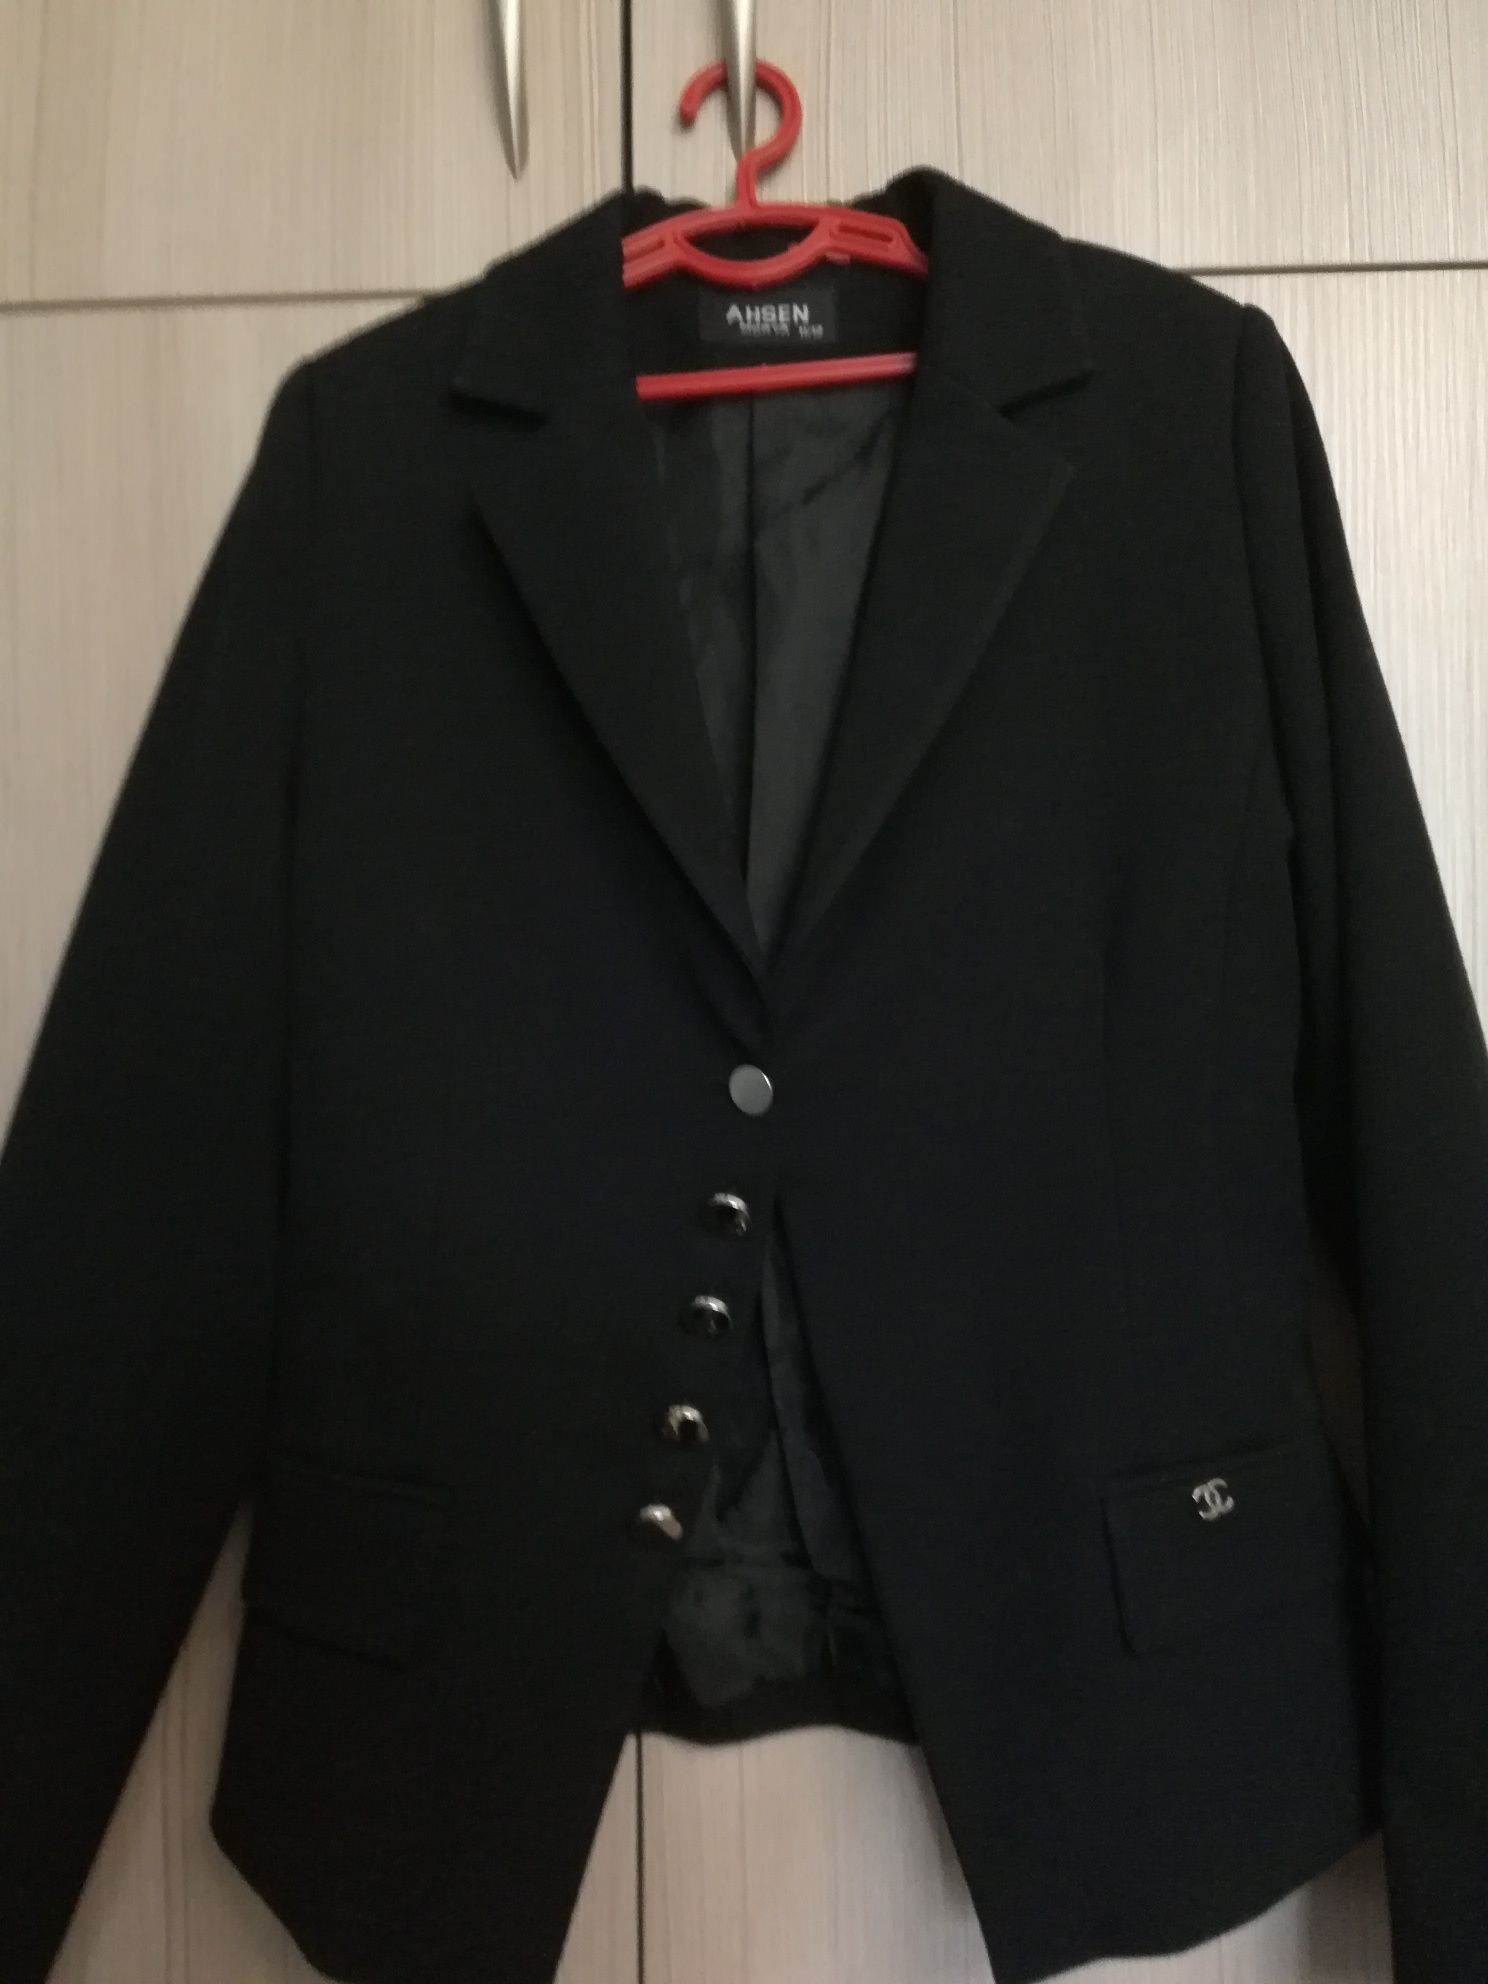 Продам черный пиджак фирмы Ashen Morva на девочку 11-13 лет